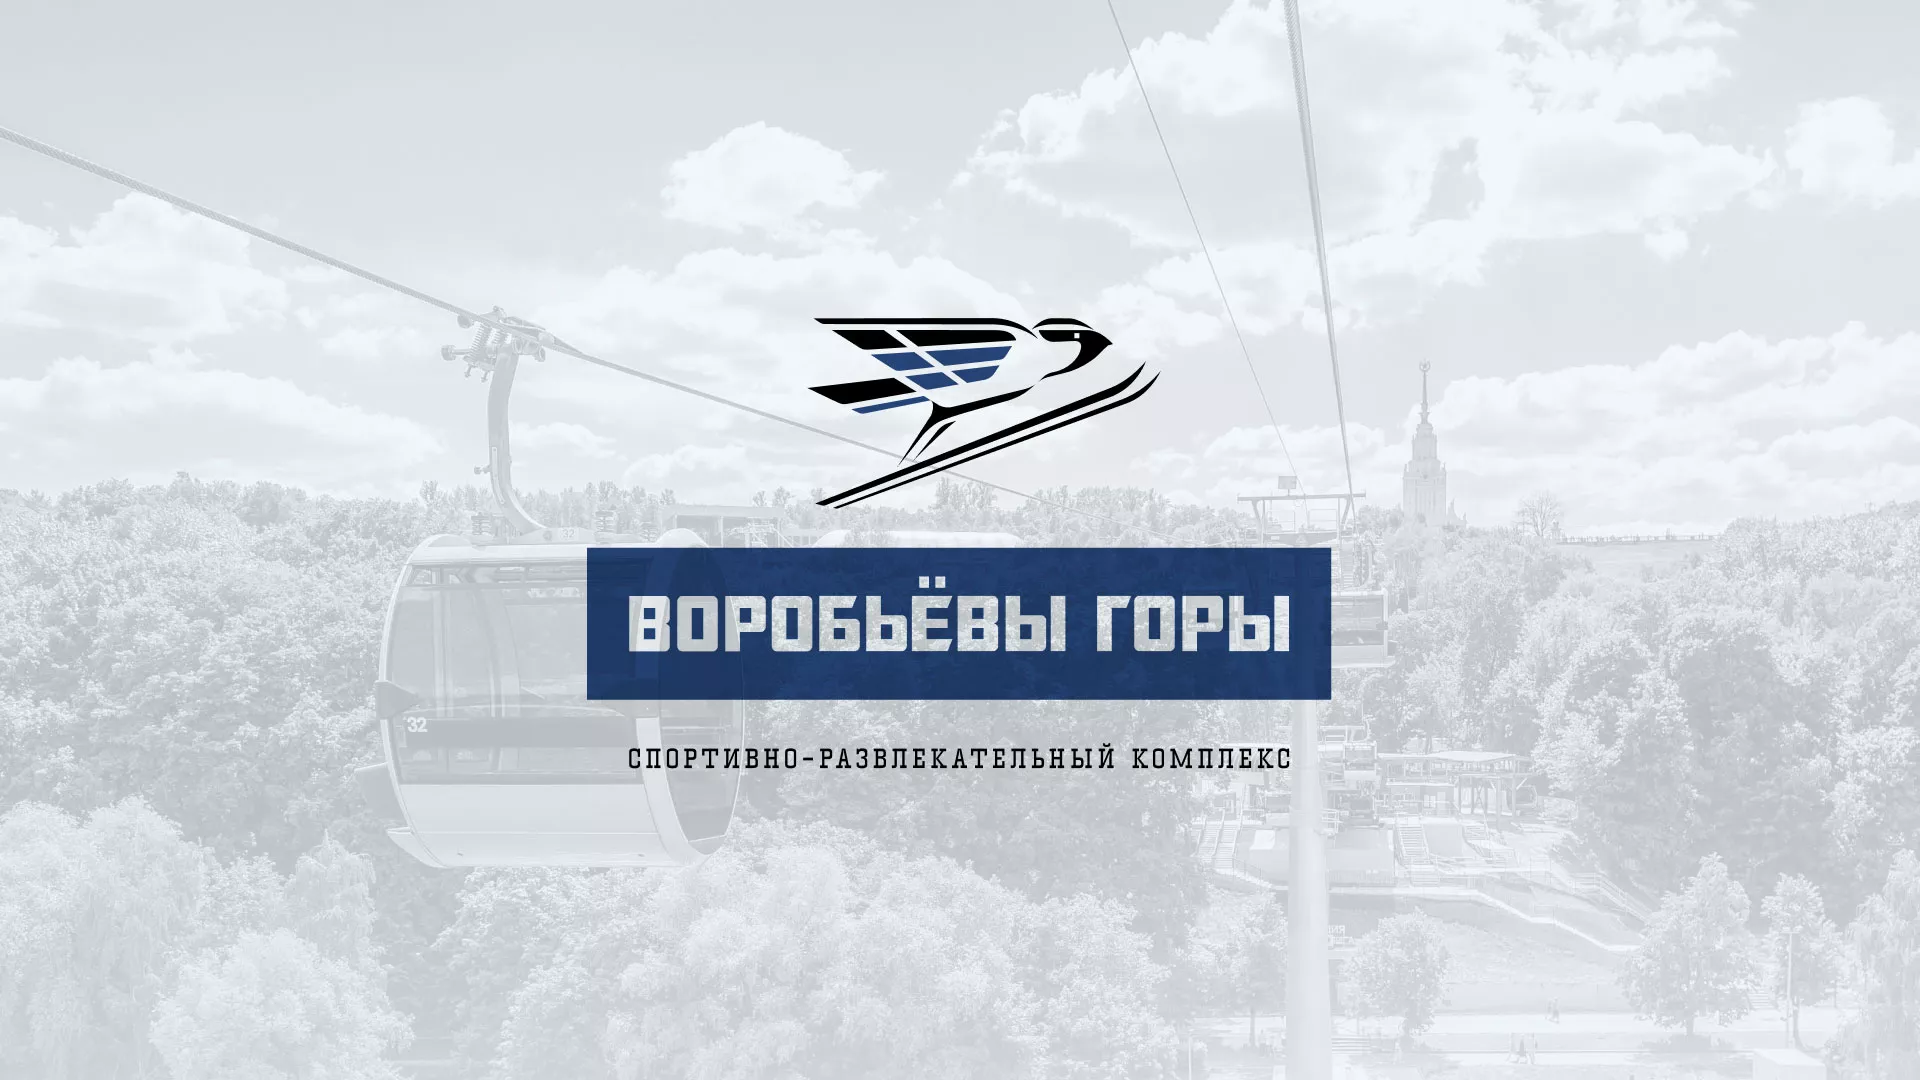 Разработка сайта в Багратионовске для спортивно-развлекательного комплекса «Воробьёвы горы»